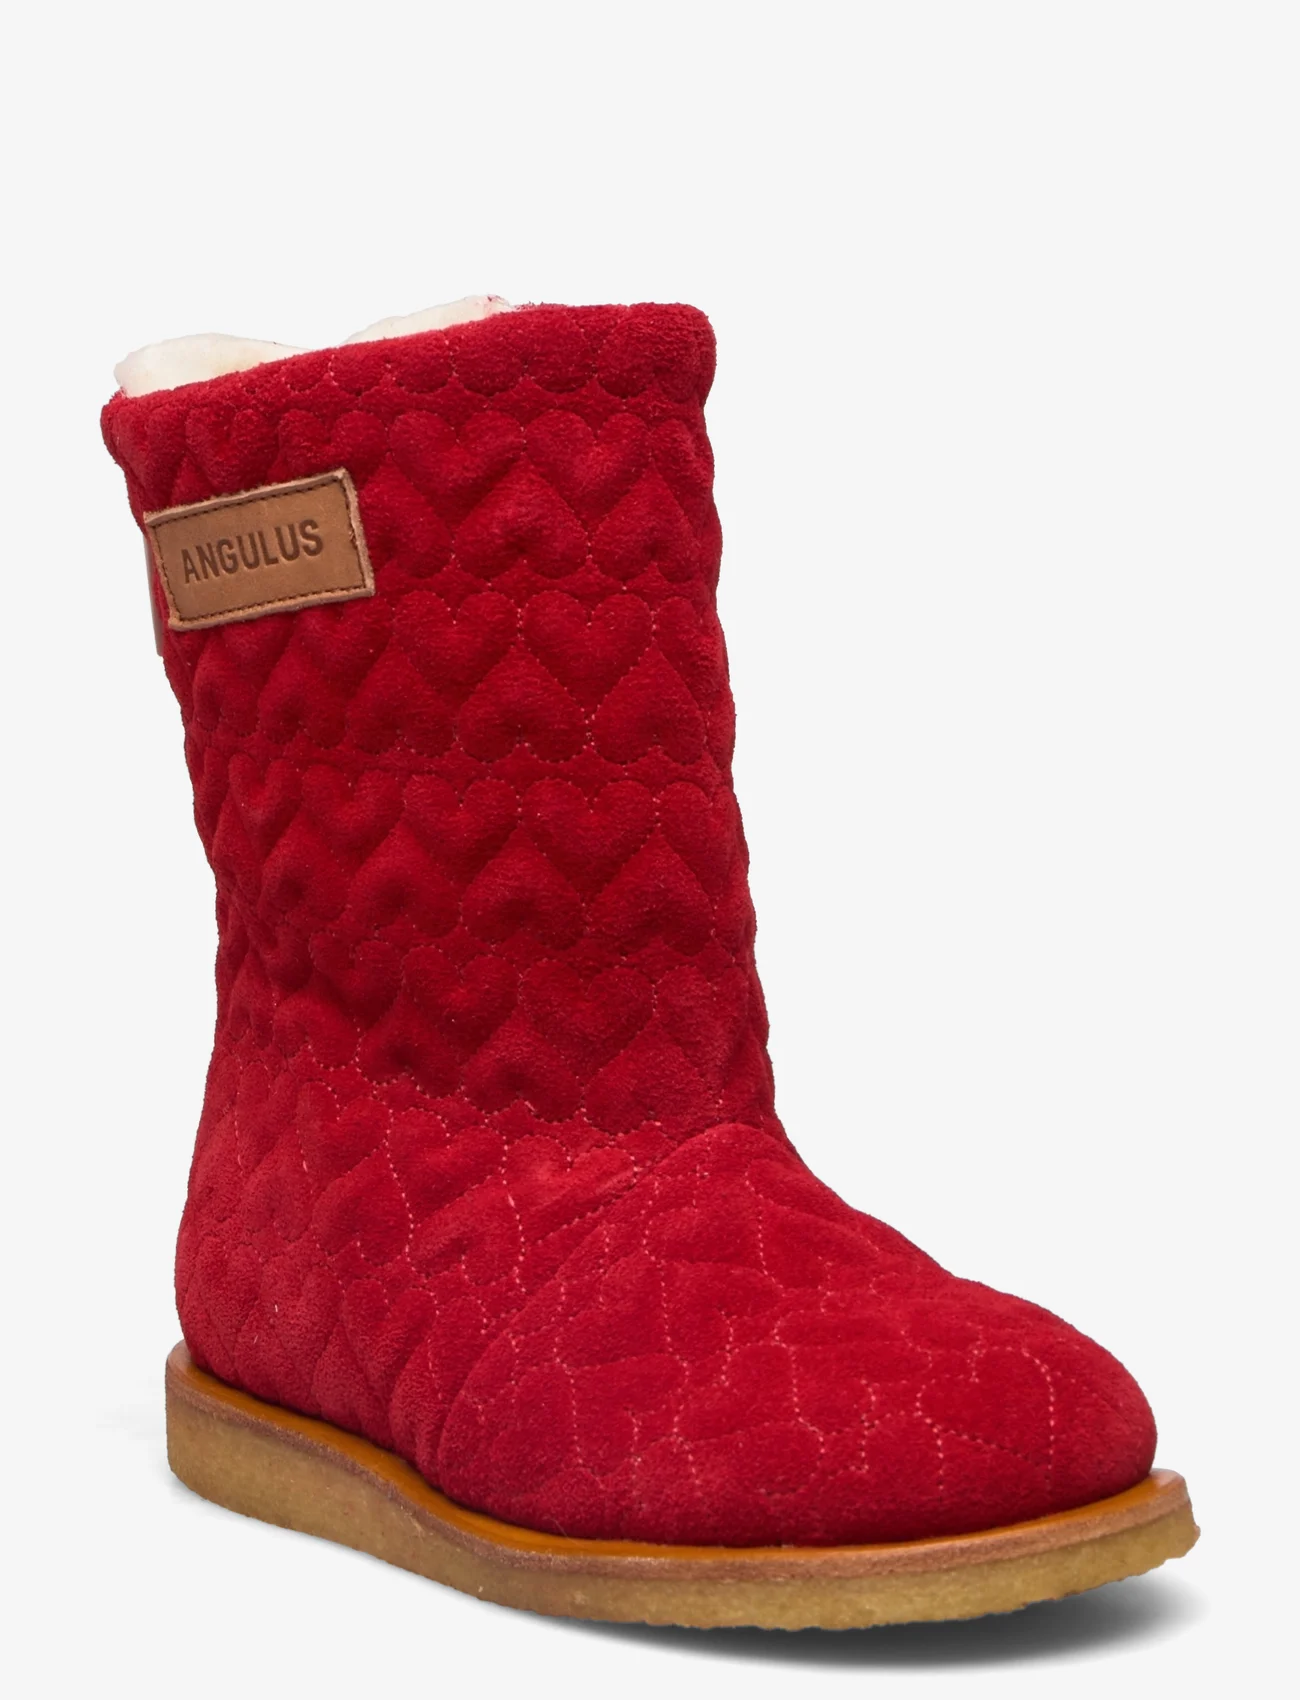 ANGULUS - Boots - flat - with zipper - børn - 1777/1789 red/cognac - 0